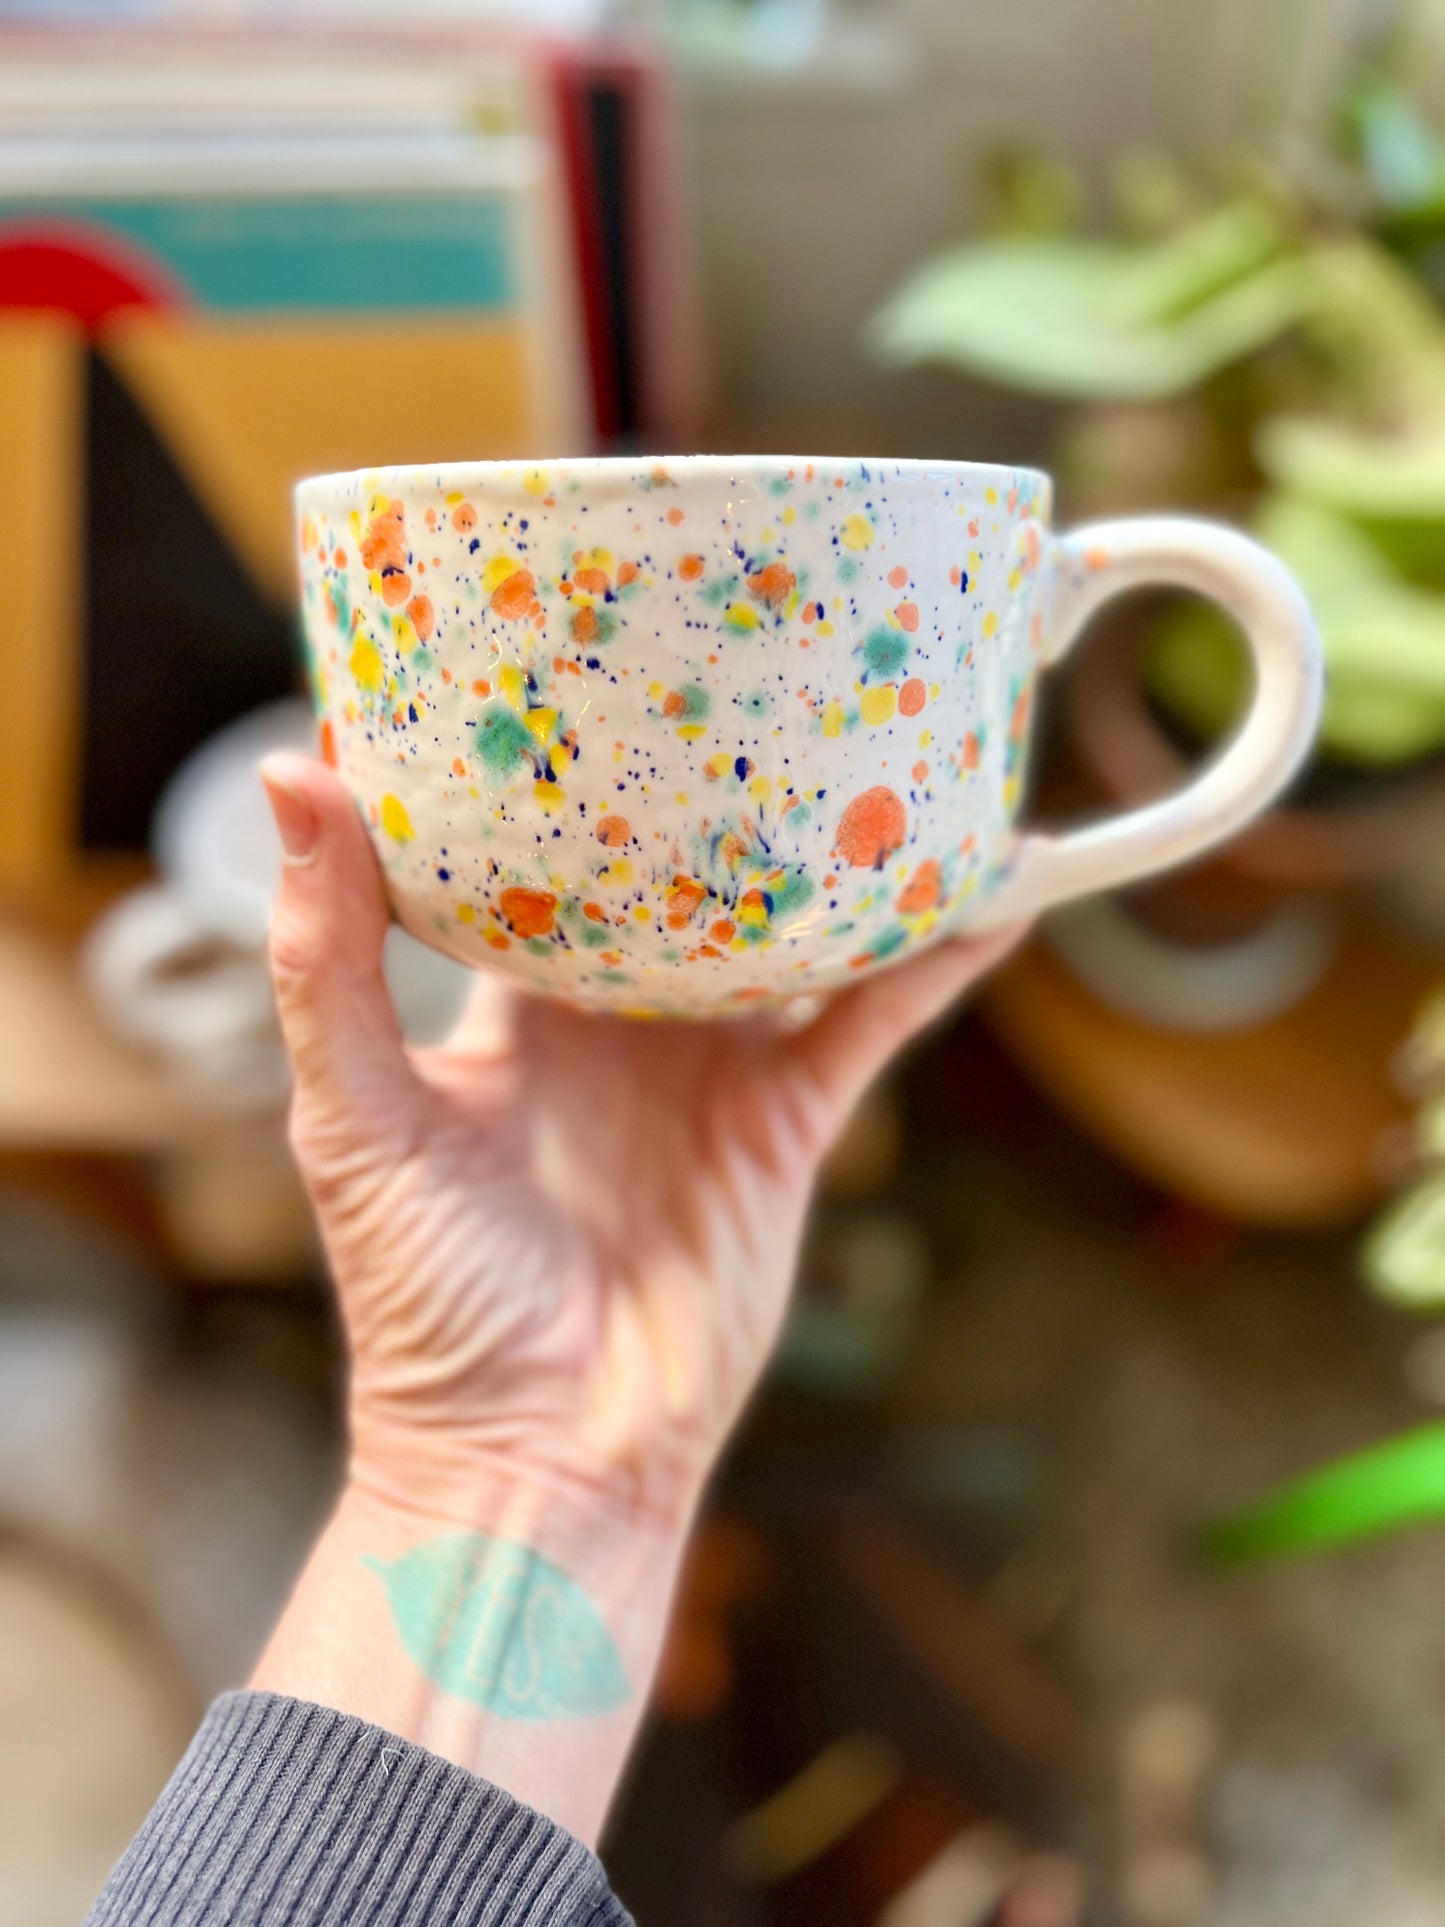 1 freckle confetti latte mug samples/seconds/sale pieces